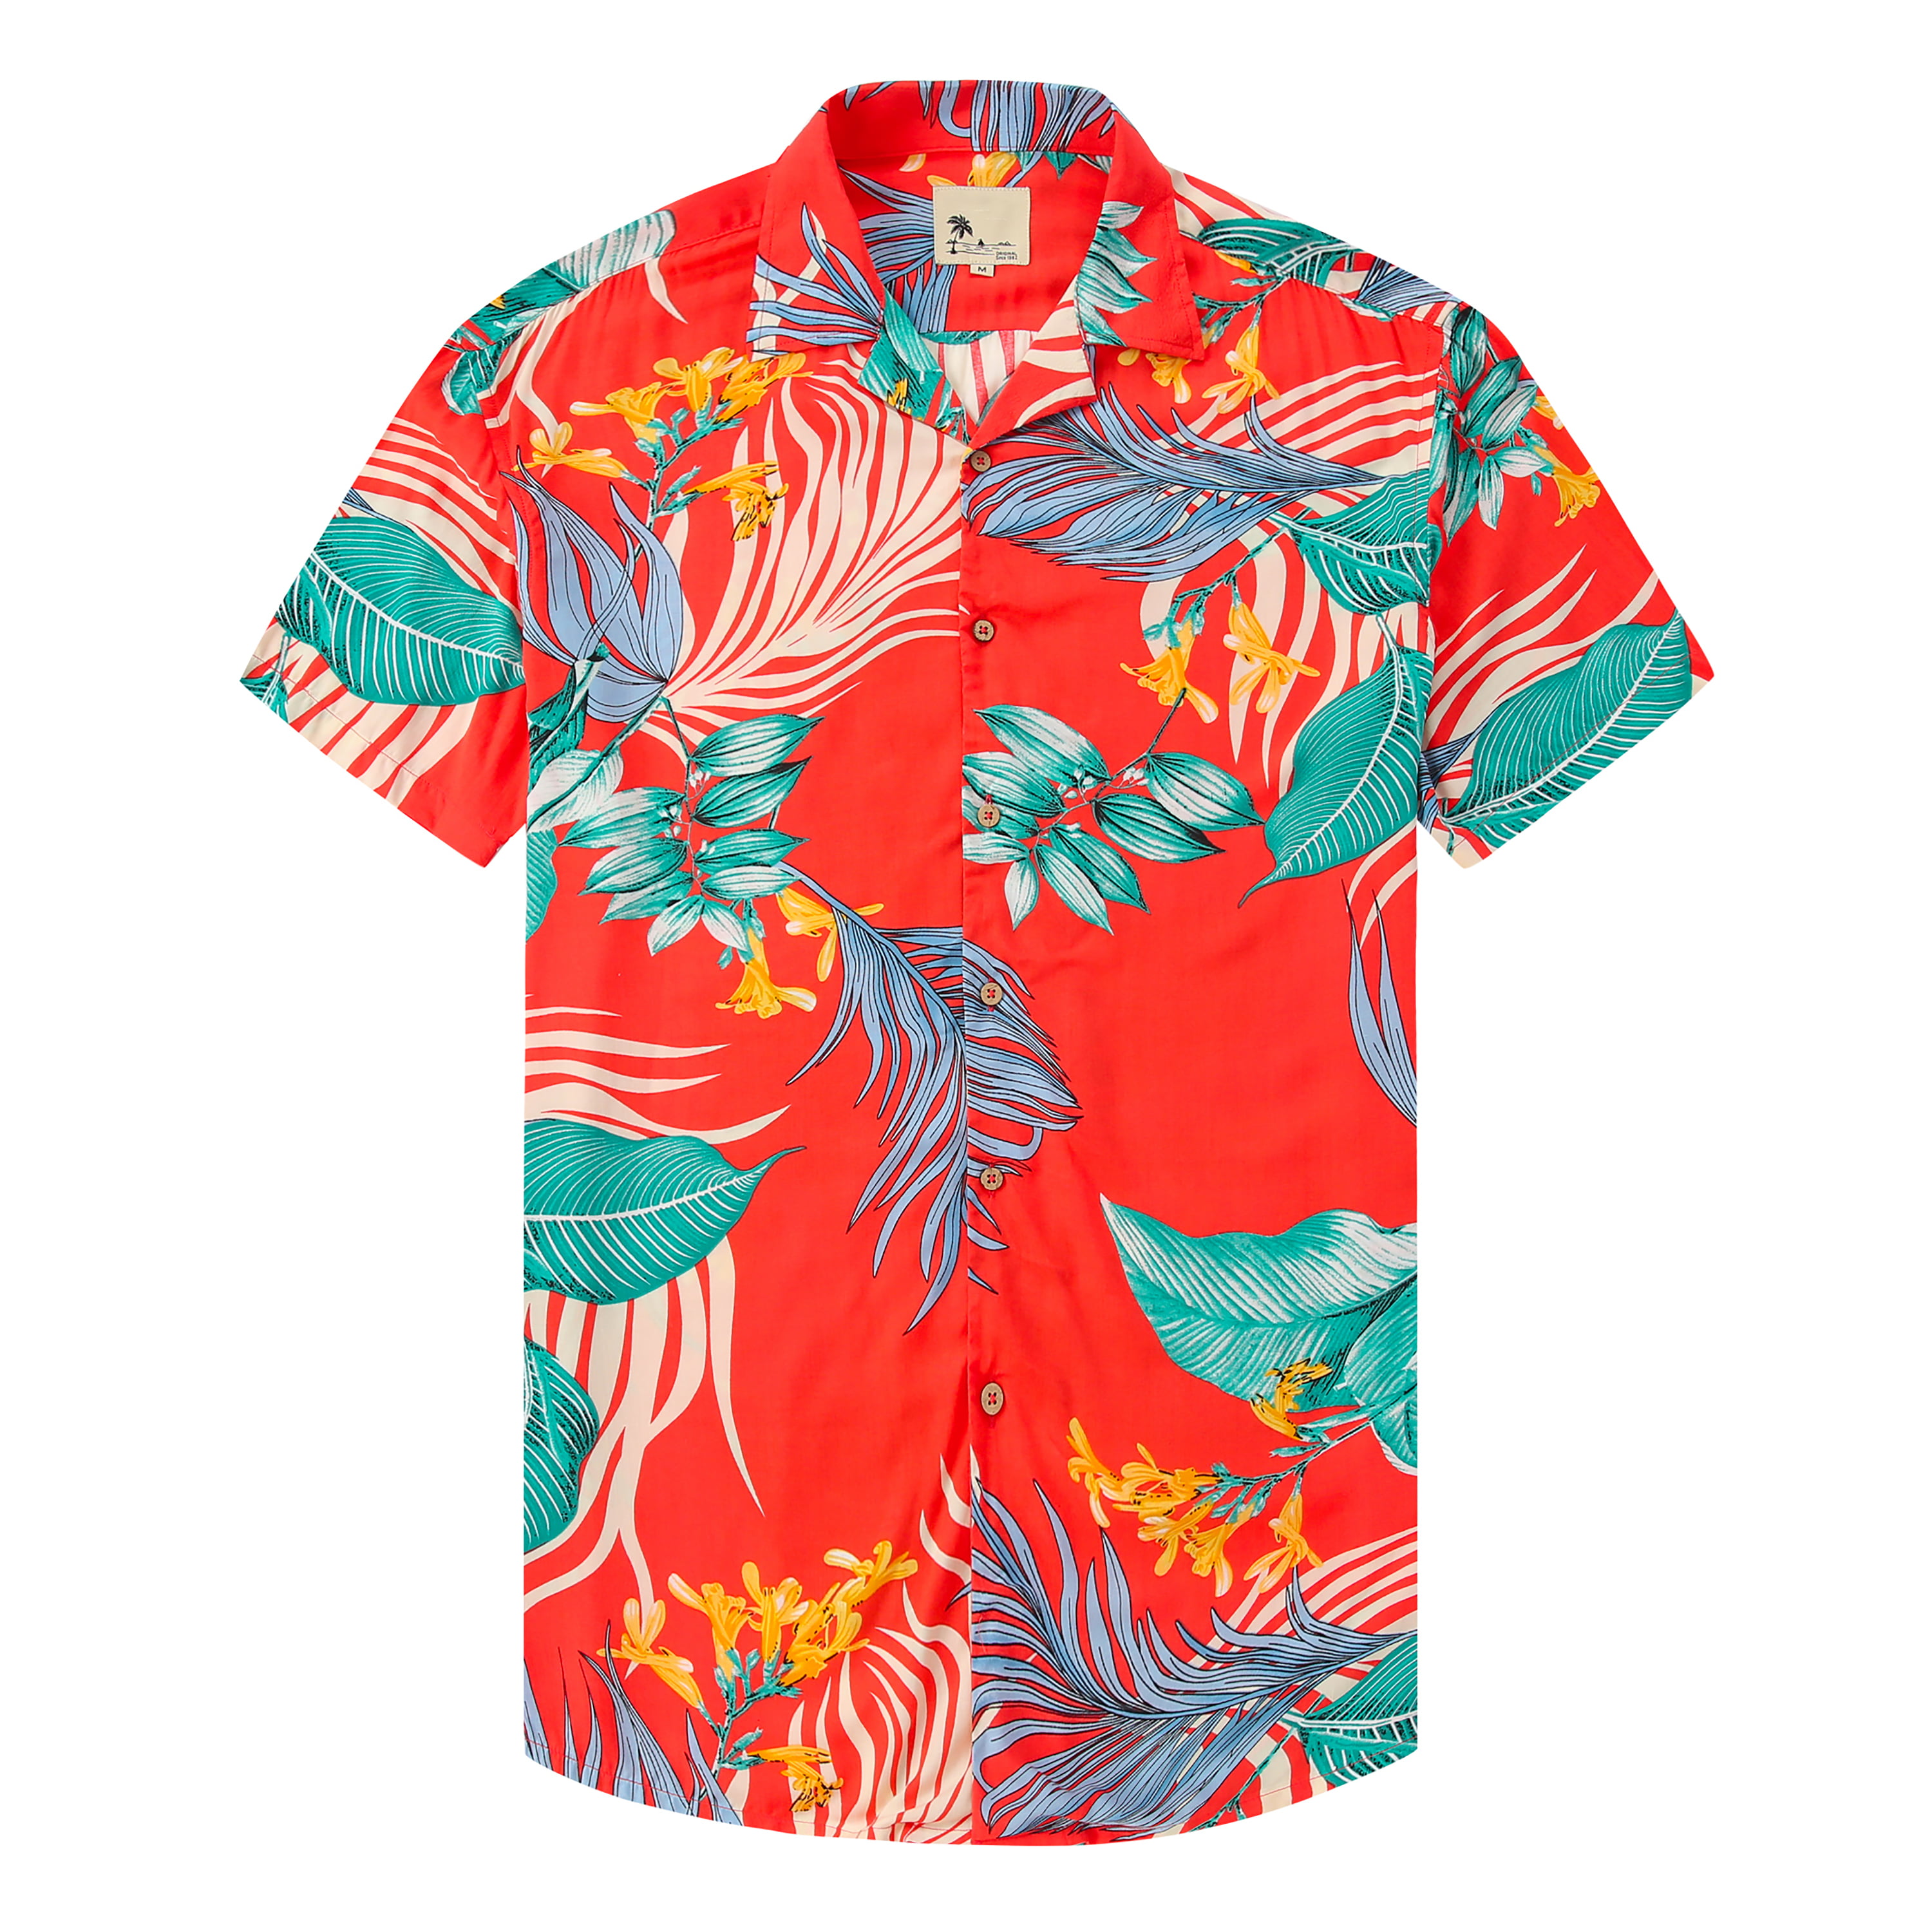 Men Short Sleeve Hawaiian Floral Printed Shirts Loose Aloha Fancy Dress Tops Tee